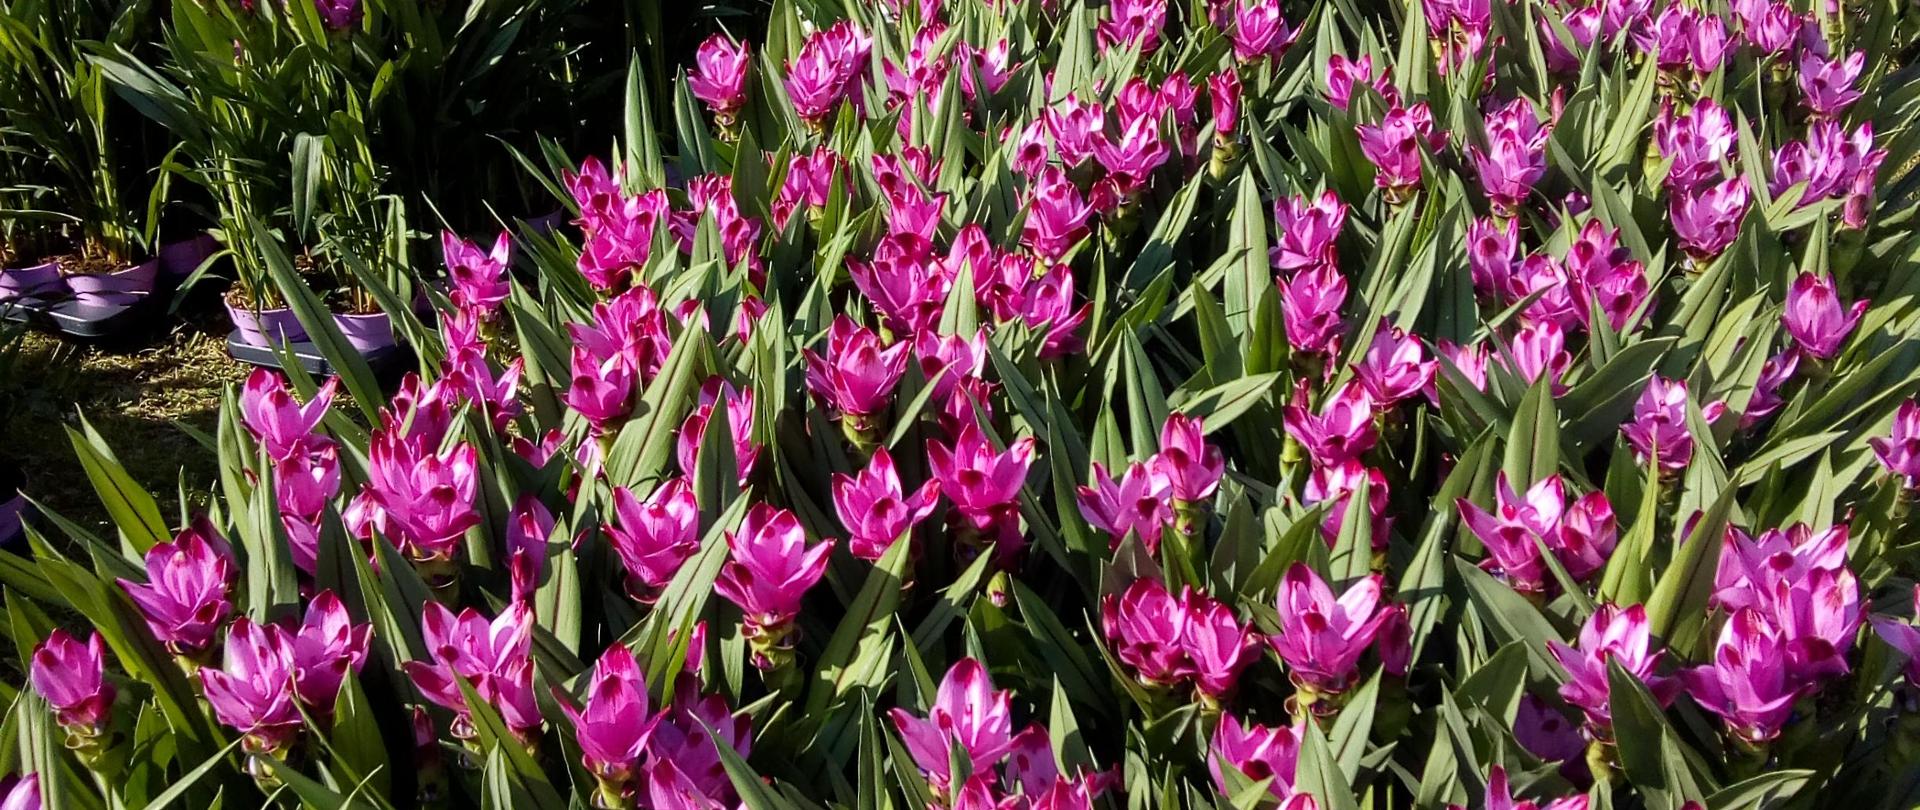 fioletowe kwiaty ustawione w rzędach